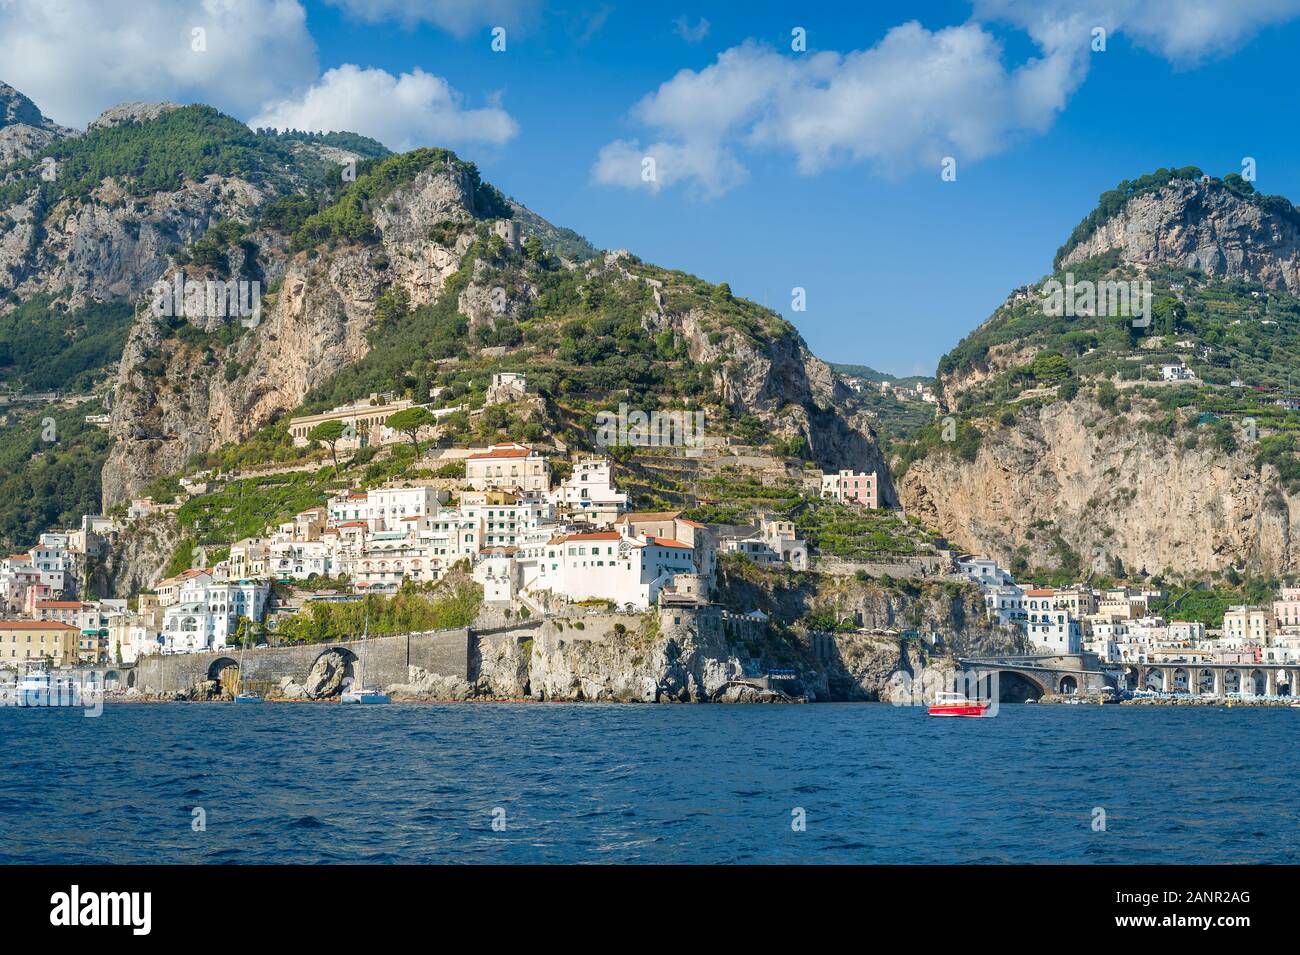 Porto di Amalfi vista dall'acqua. Costiera Amalfitana crociera, Italia. Foto Stock